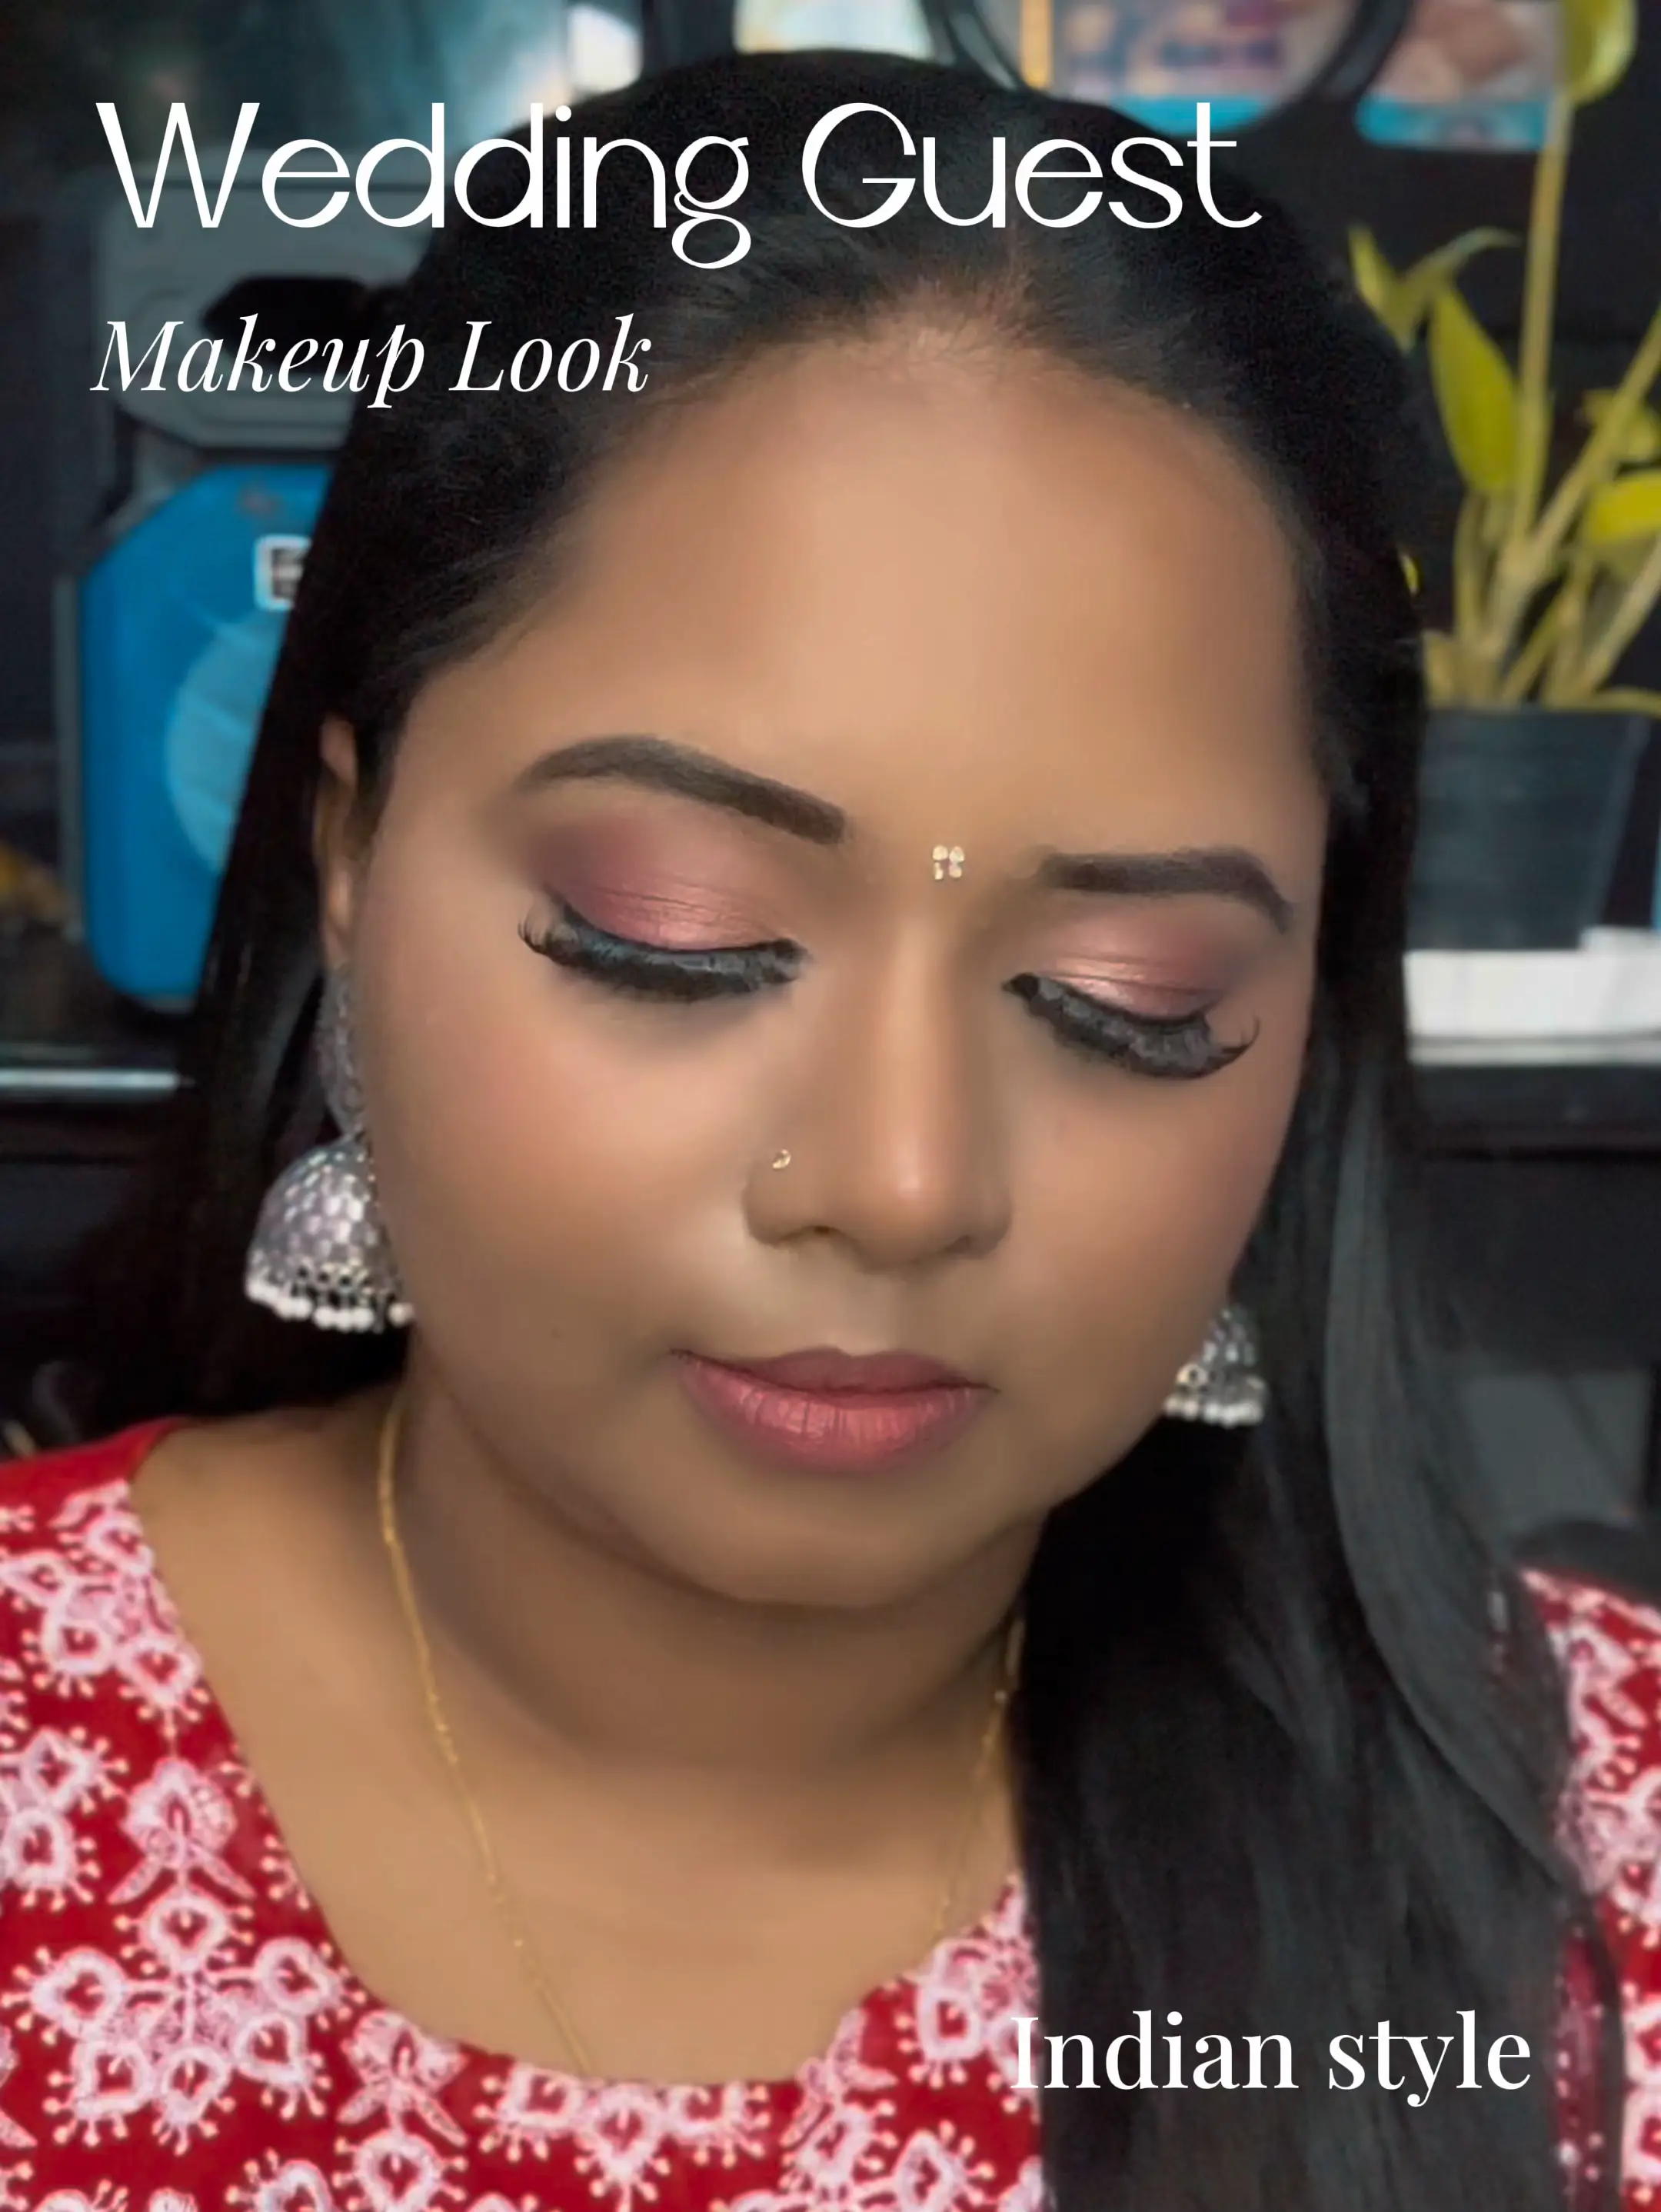 Indian Wedding Guest Makeup Look